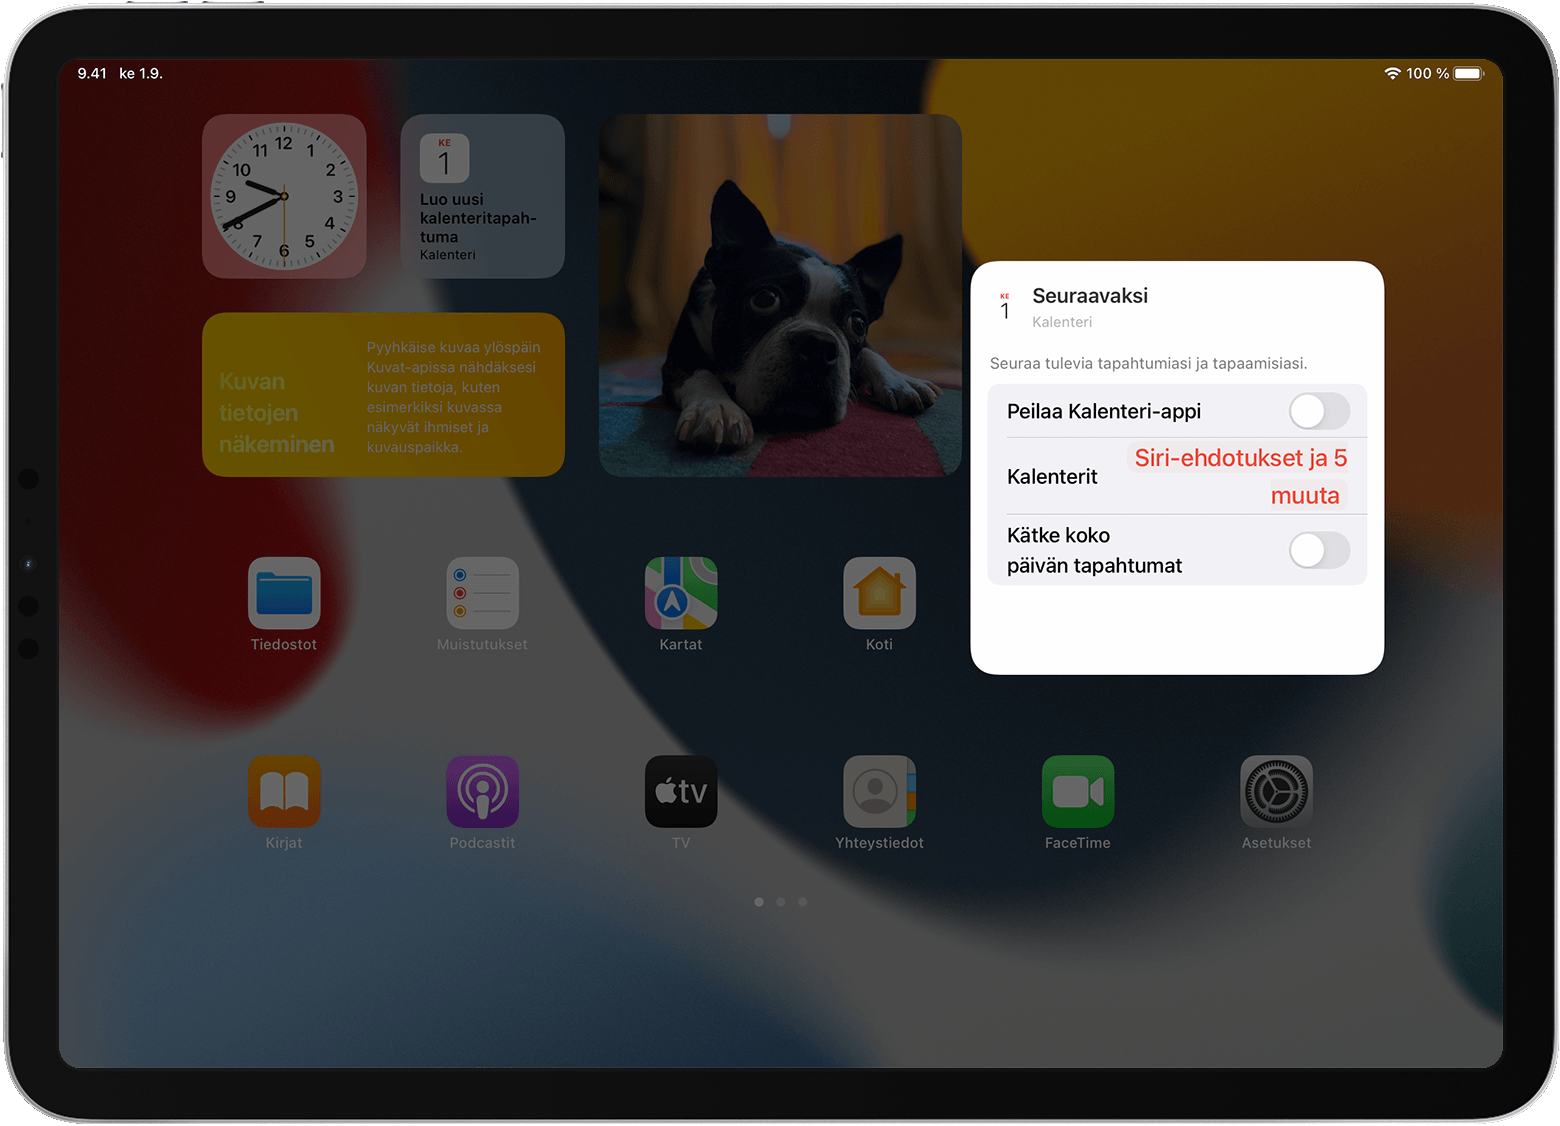 iPad-näyttö, jossa näkyvät Muistutukset-widgetin asetukset